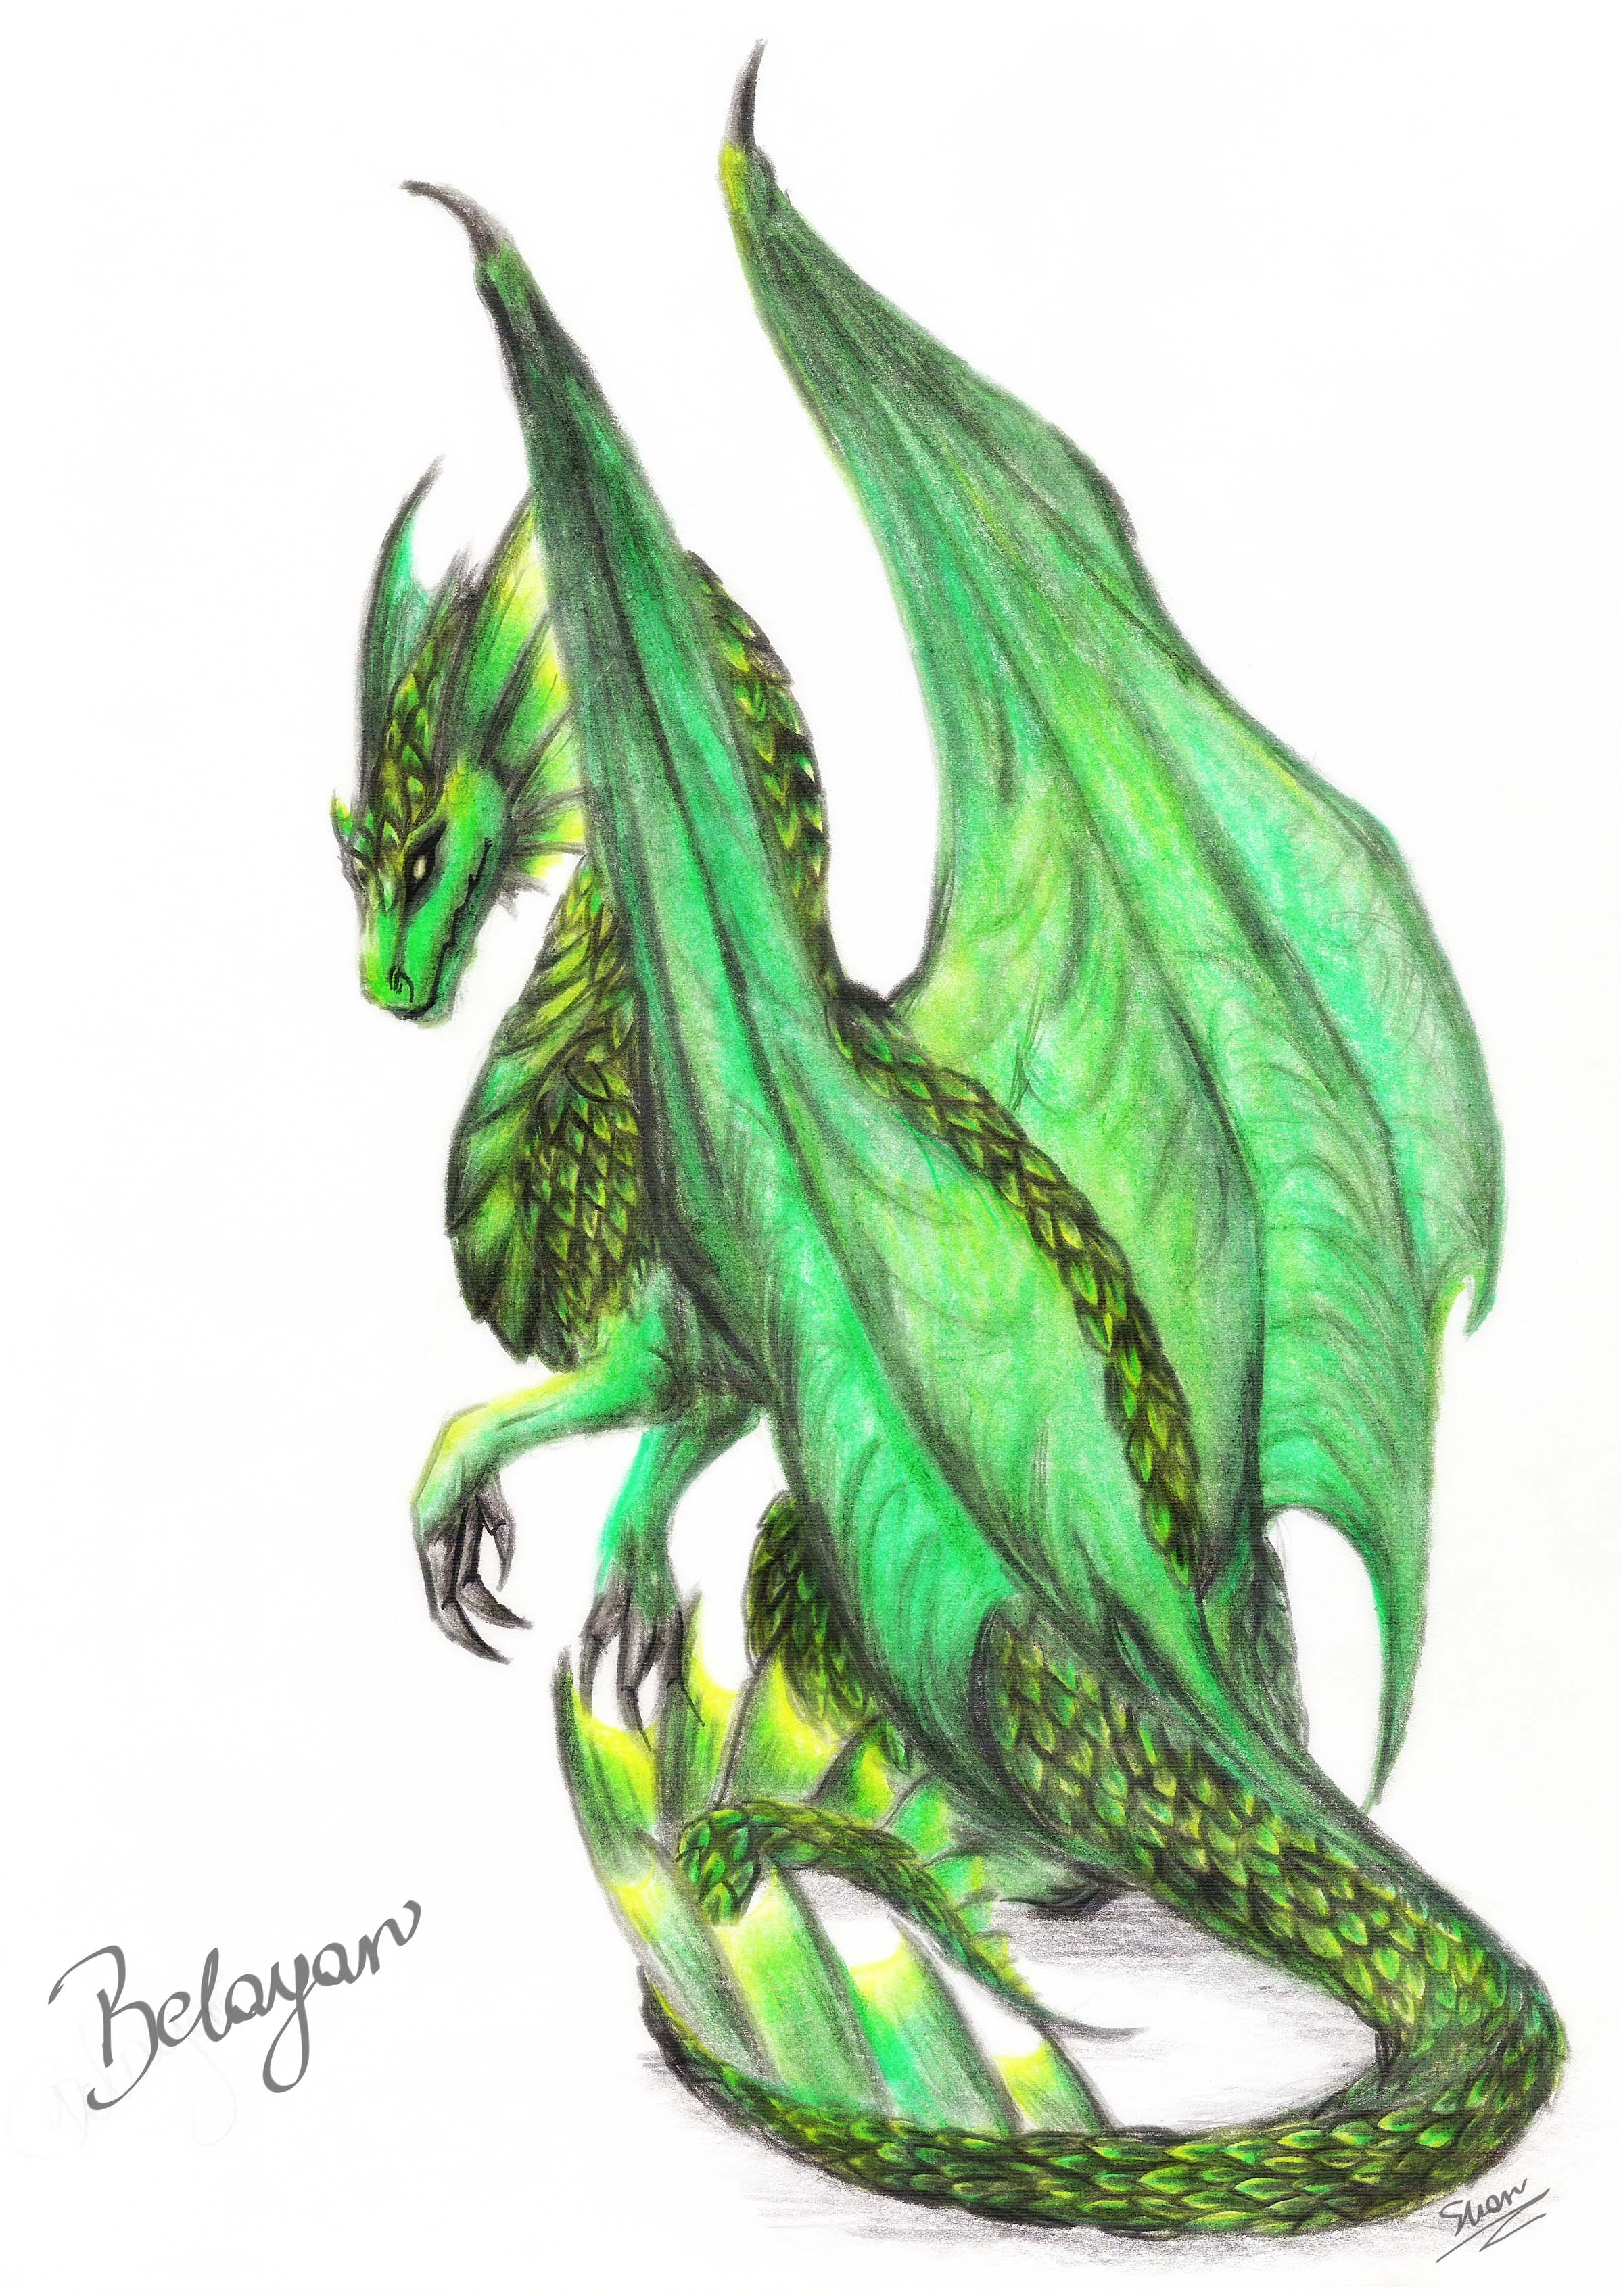 Belayar___Green_Dragon_by_shar_vampire.jpg